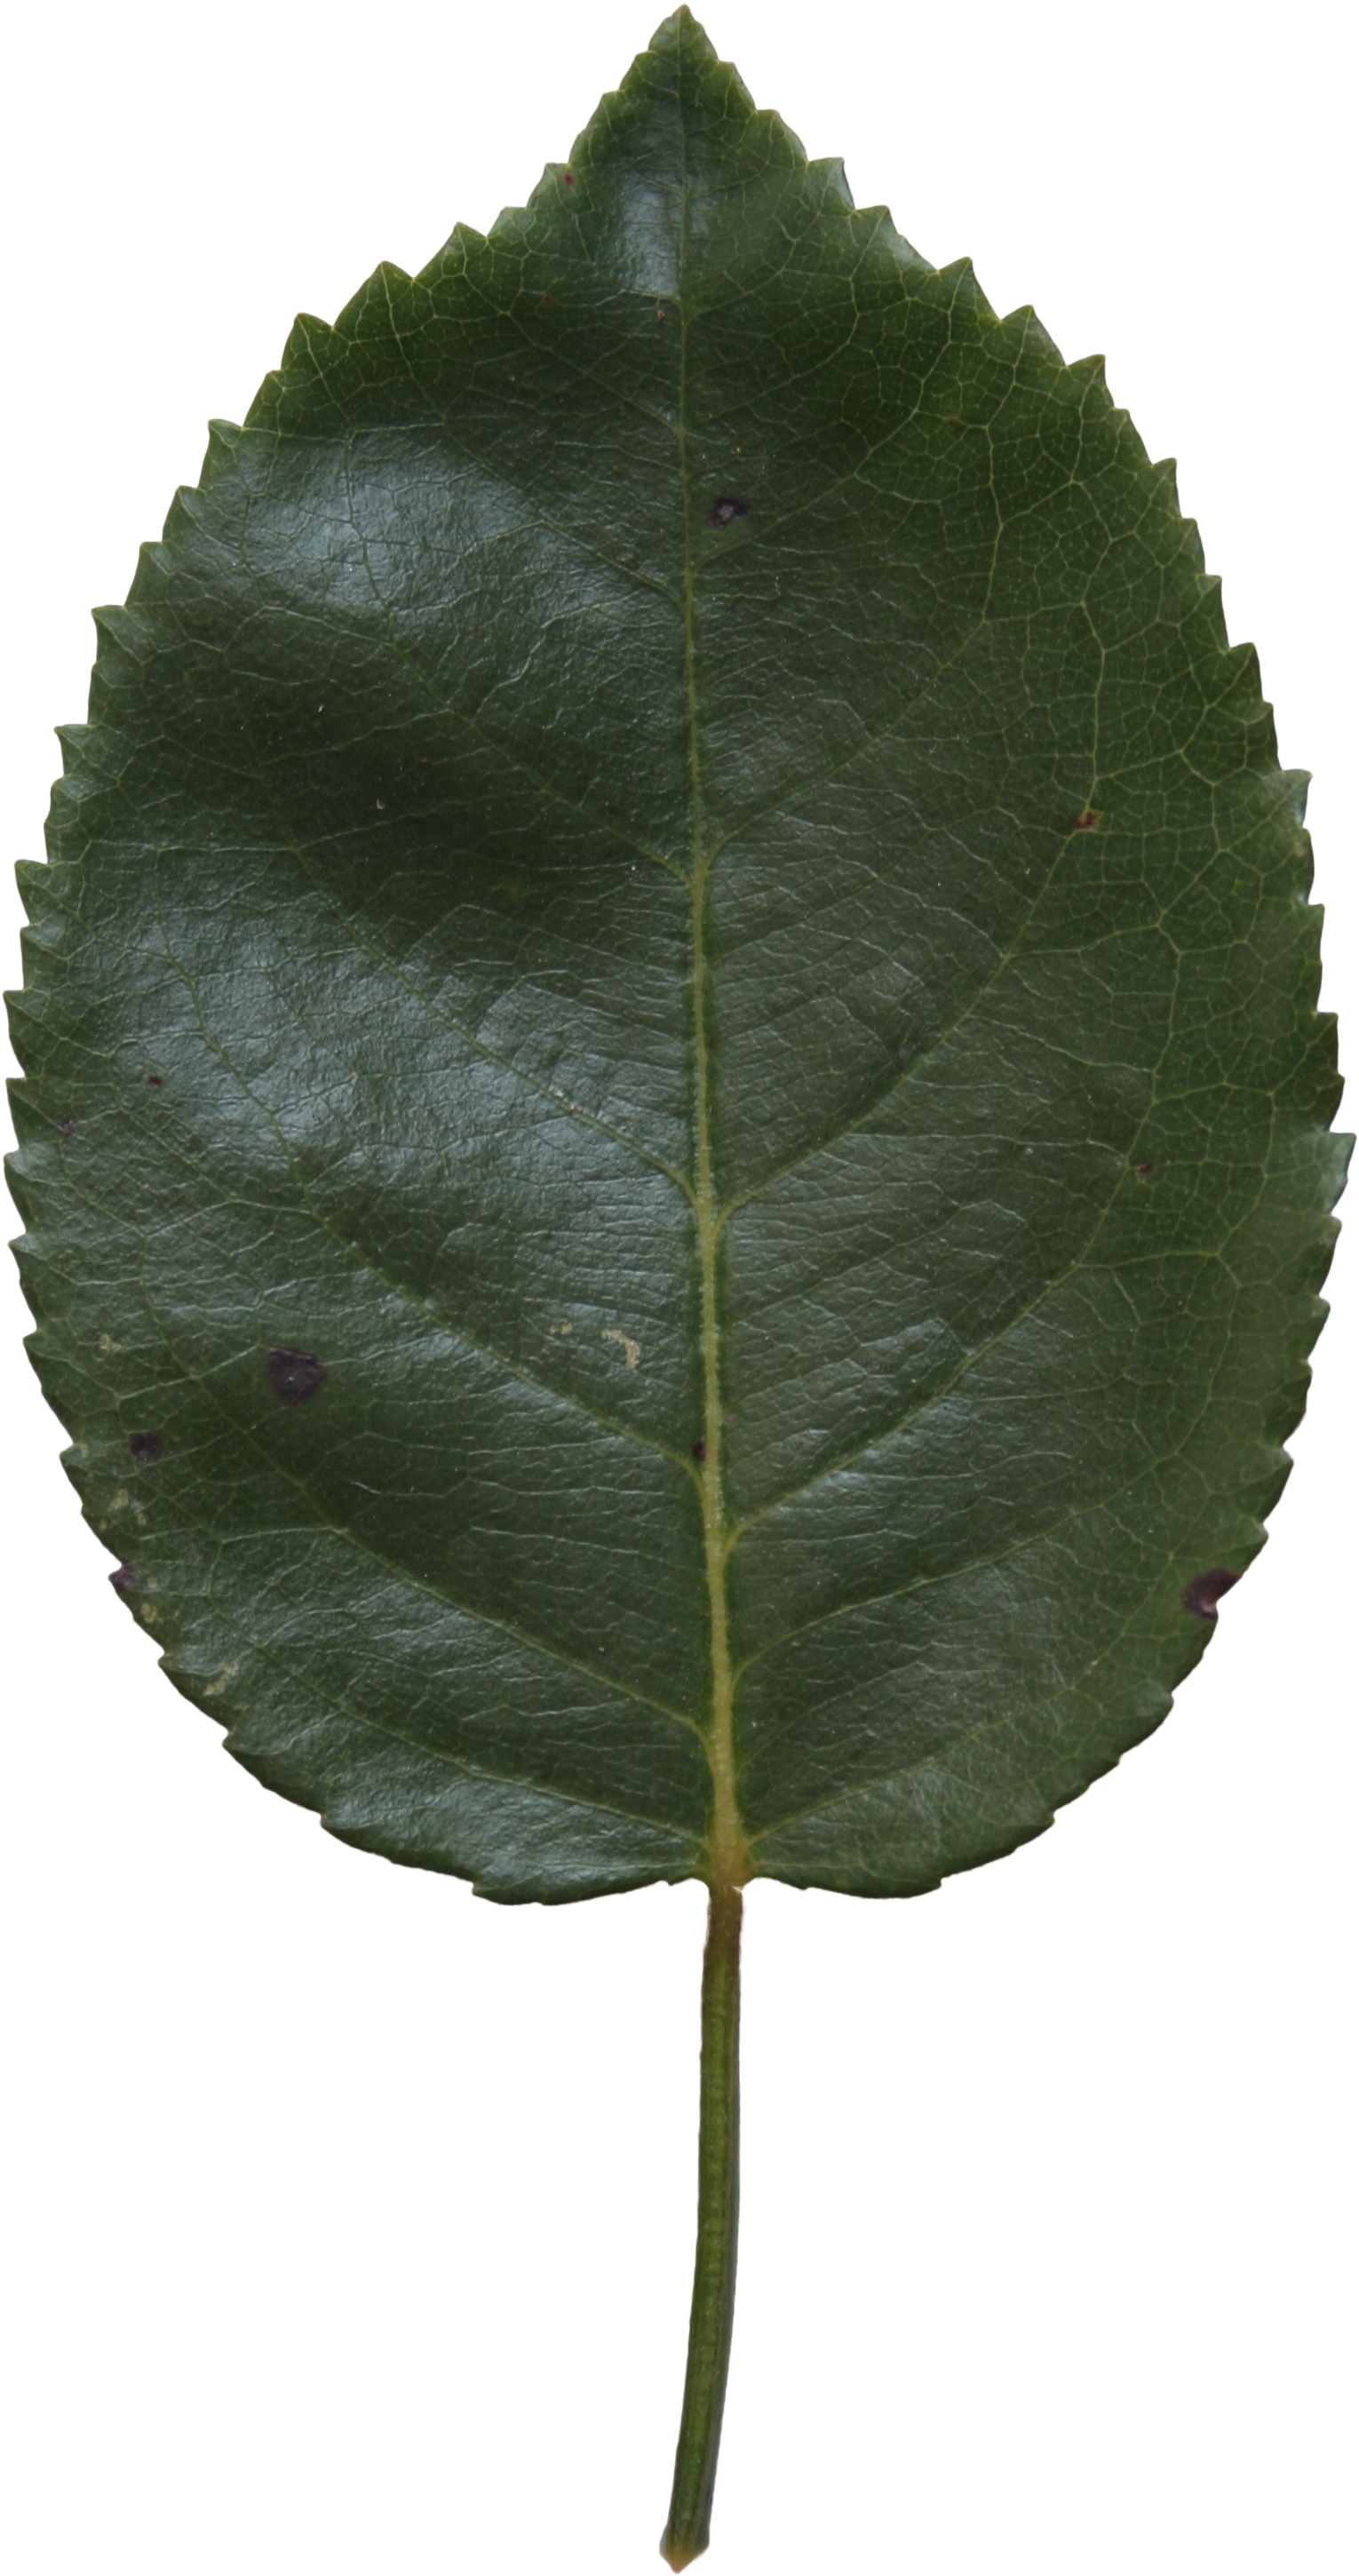 Birch Leaf Texture - Canoe Birch (2304x3456)